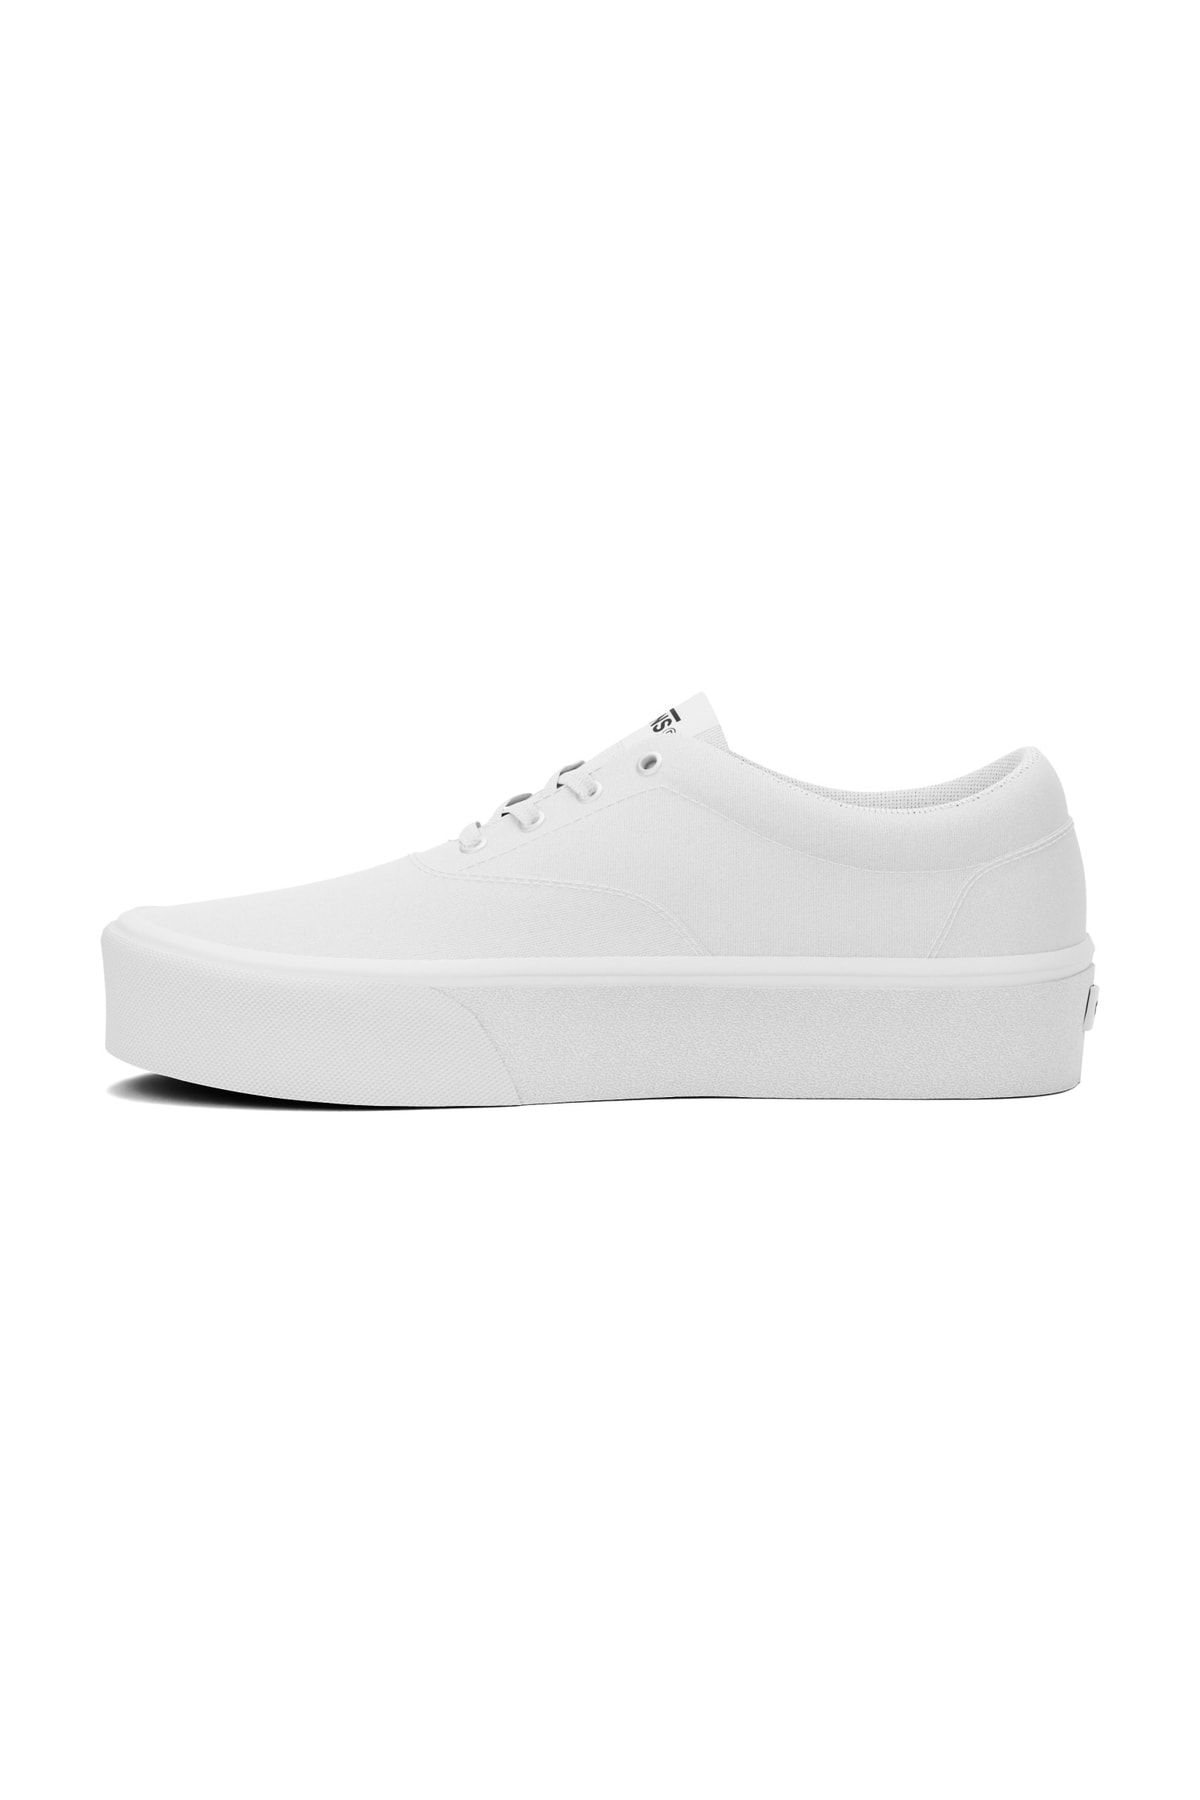 Vans Doheny Platform Beyaz Kadın Günlük Ayakkabı Vn0a4u210rg1